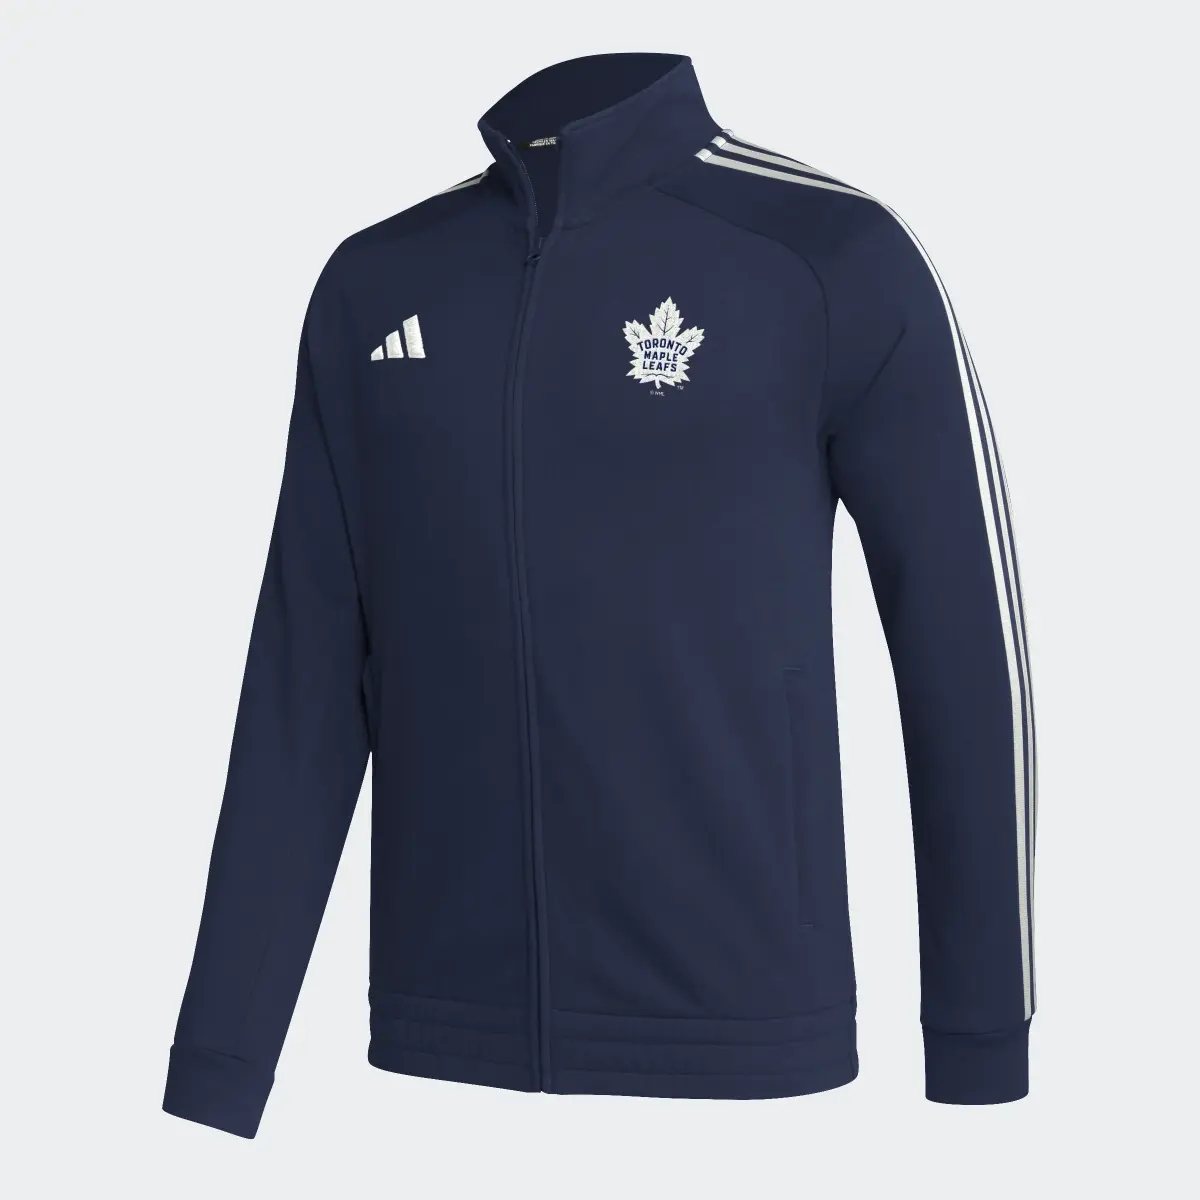 Adidas Maple Leafs Track Jacket. 1